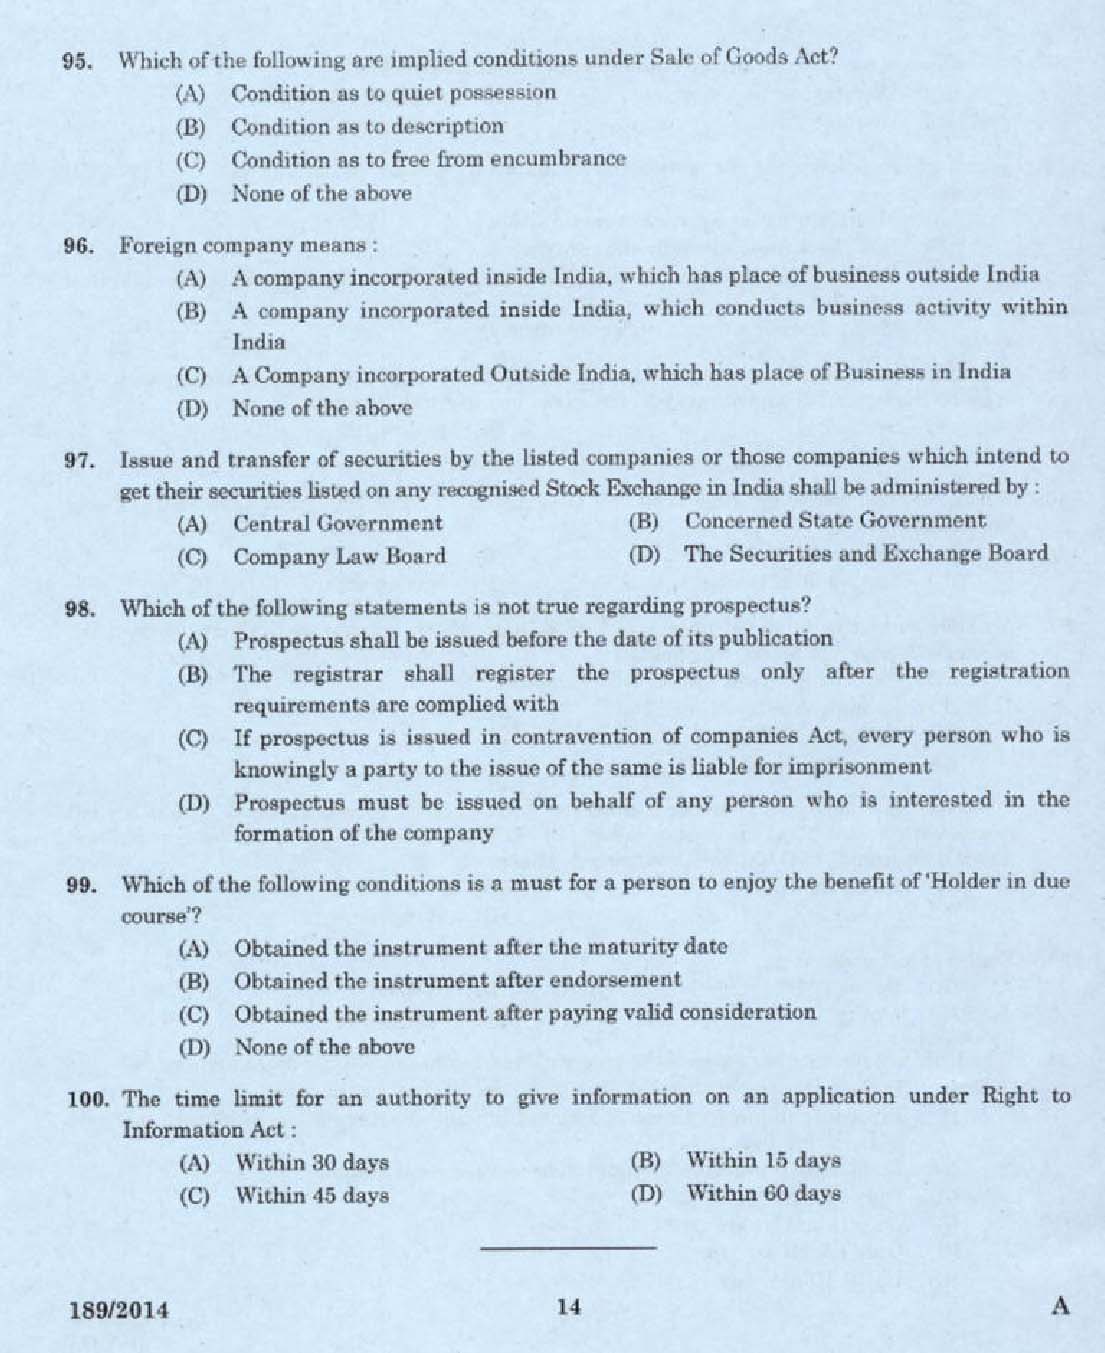 KPSC Legal Officer Exam 2014 Code 1892014 12